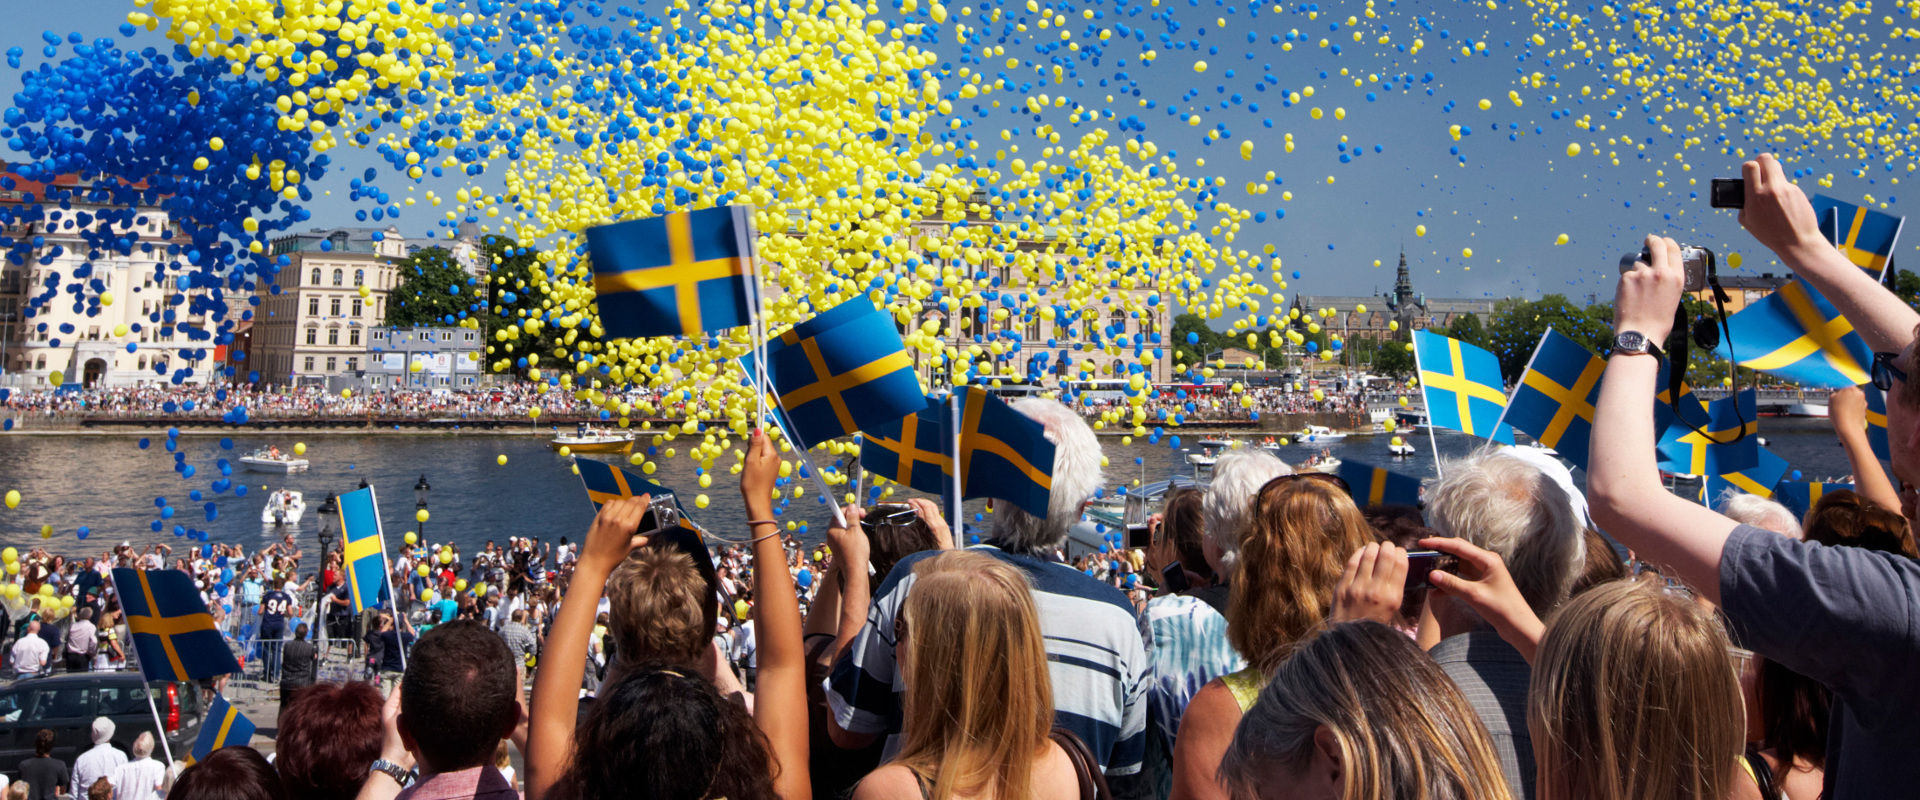 شش دلیل عمده برای تحصیل در سوئد